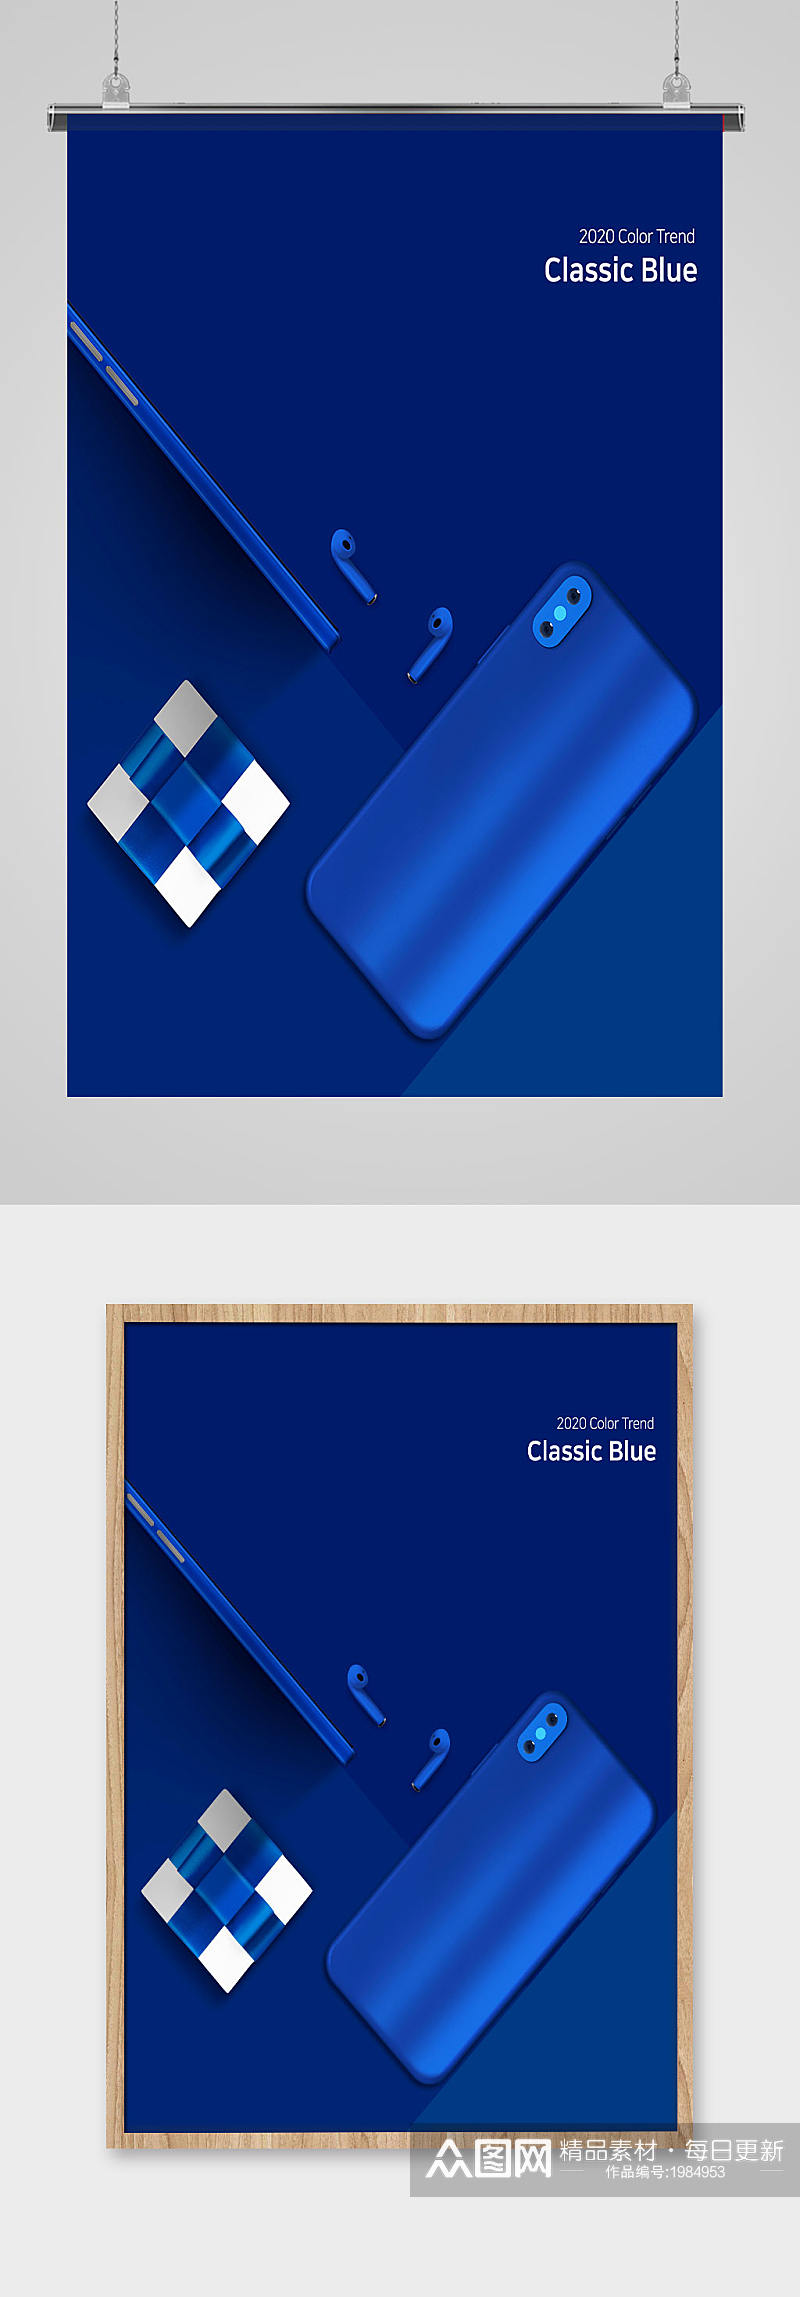 蓝色高端手机礼盒海报背景素材